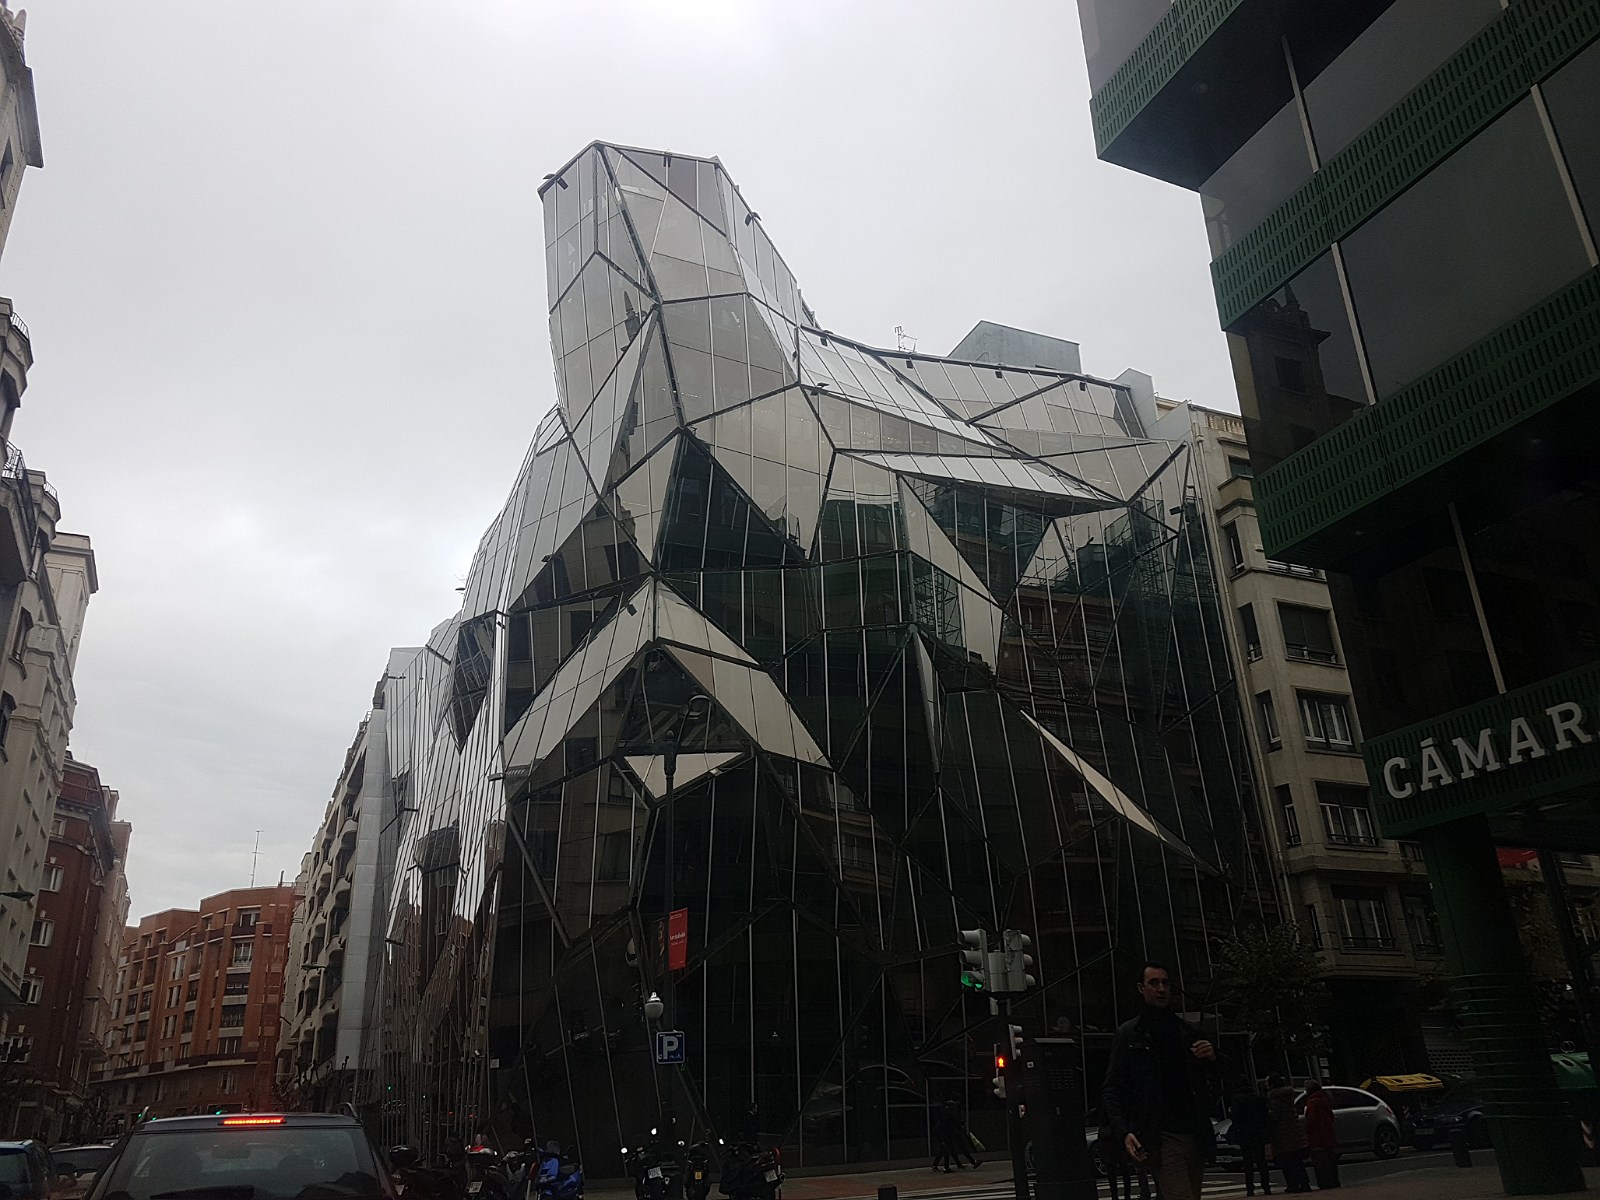 10. Szklana 'kamienica' w centrum Bilbao w Hiszpanii.